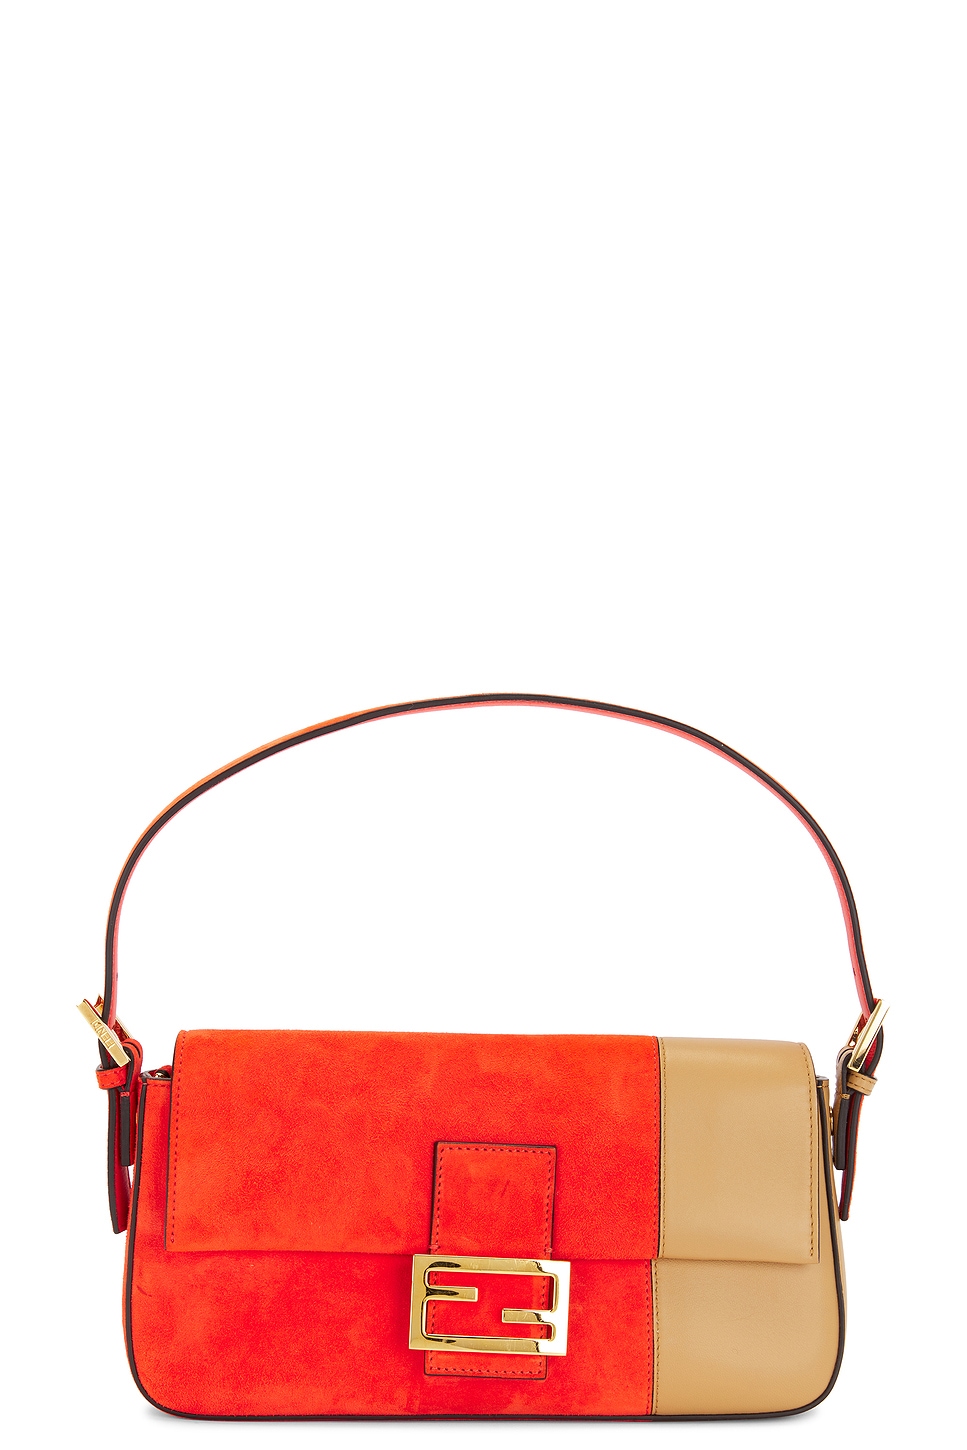 Fendi Baguette Suede & Leather Shoulder Bag In Orange & Beige